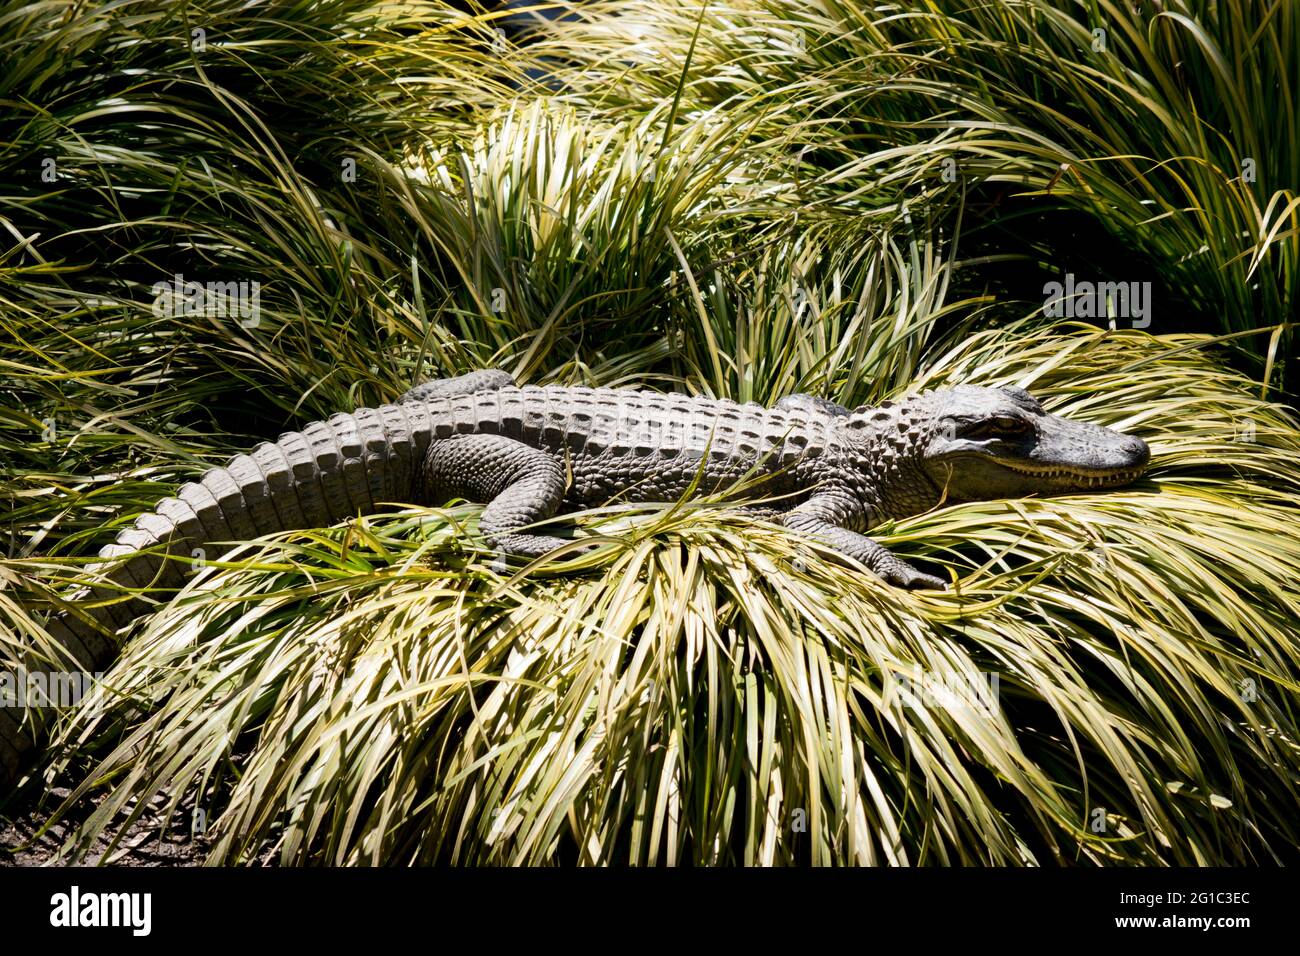 Der Alligator wartet darauf, auf alles zu stürzen, was ihn passiert Stockfoto